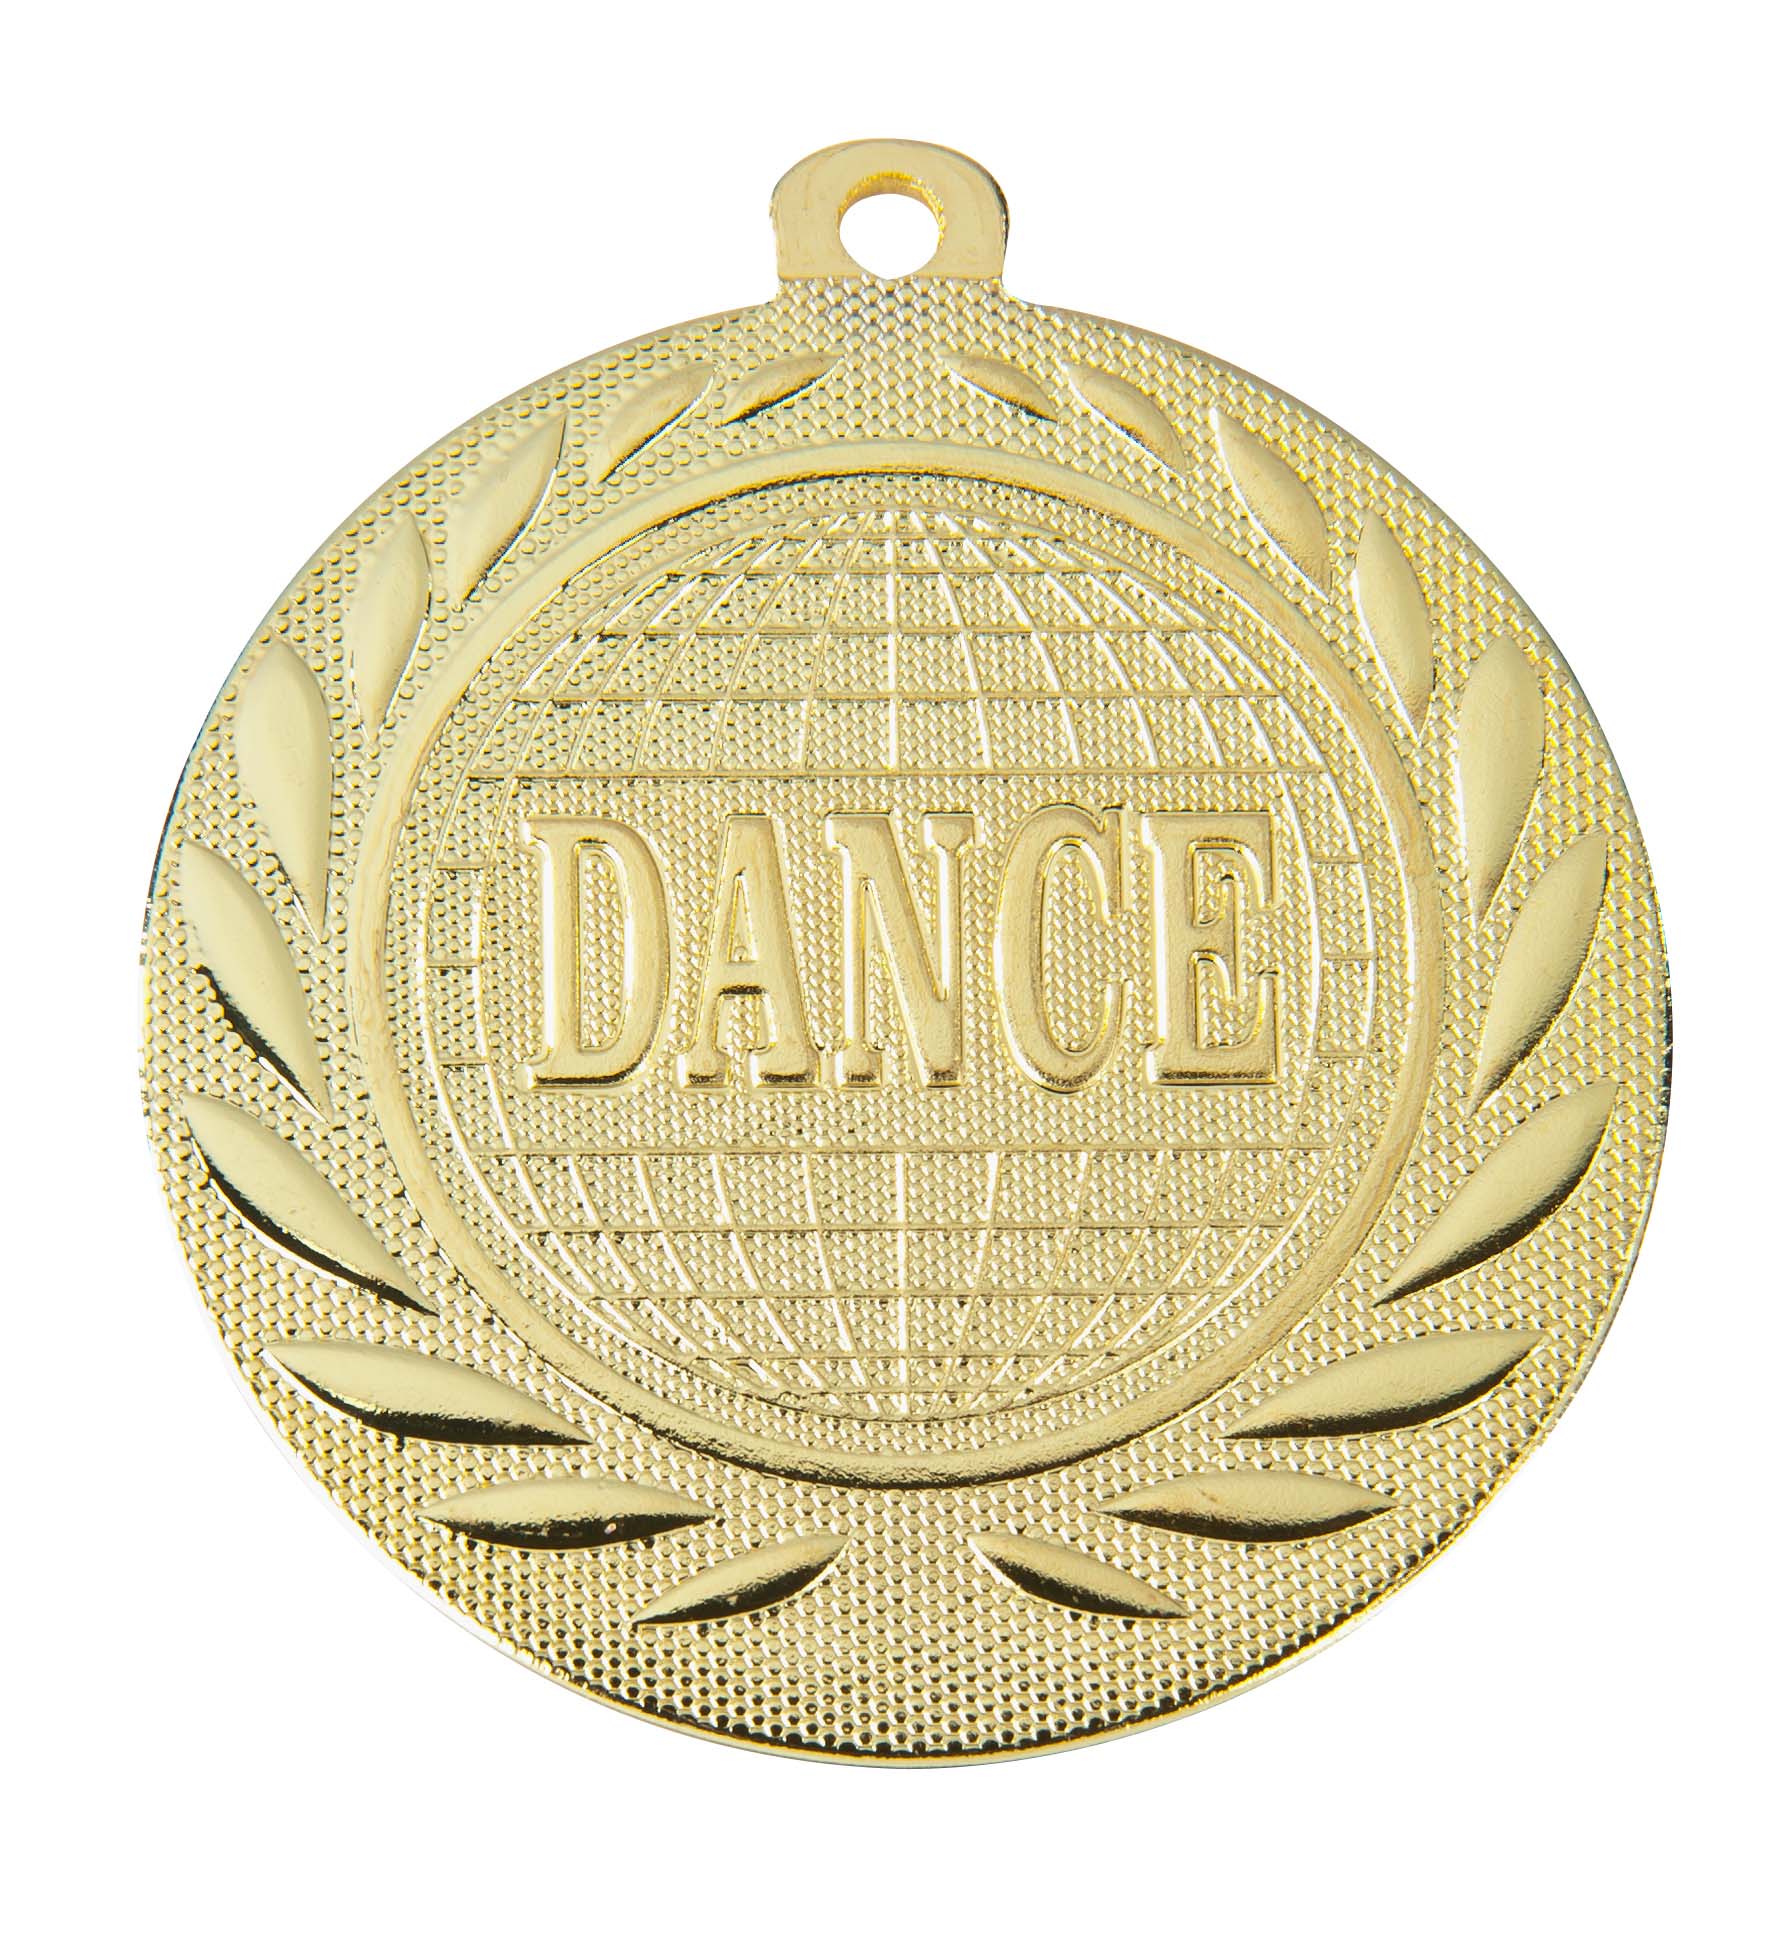 Dance-Medaille DI5000R inkl. Band und Beschriftung Gold Fertig montiert gegen Aufpreis